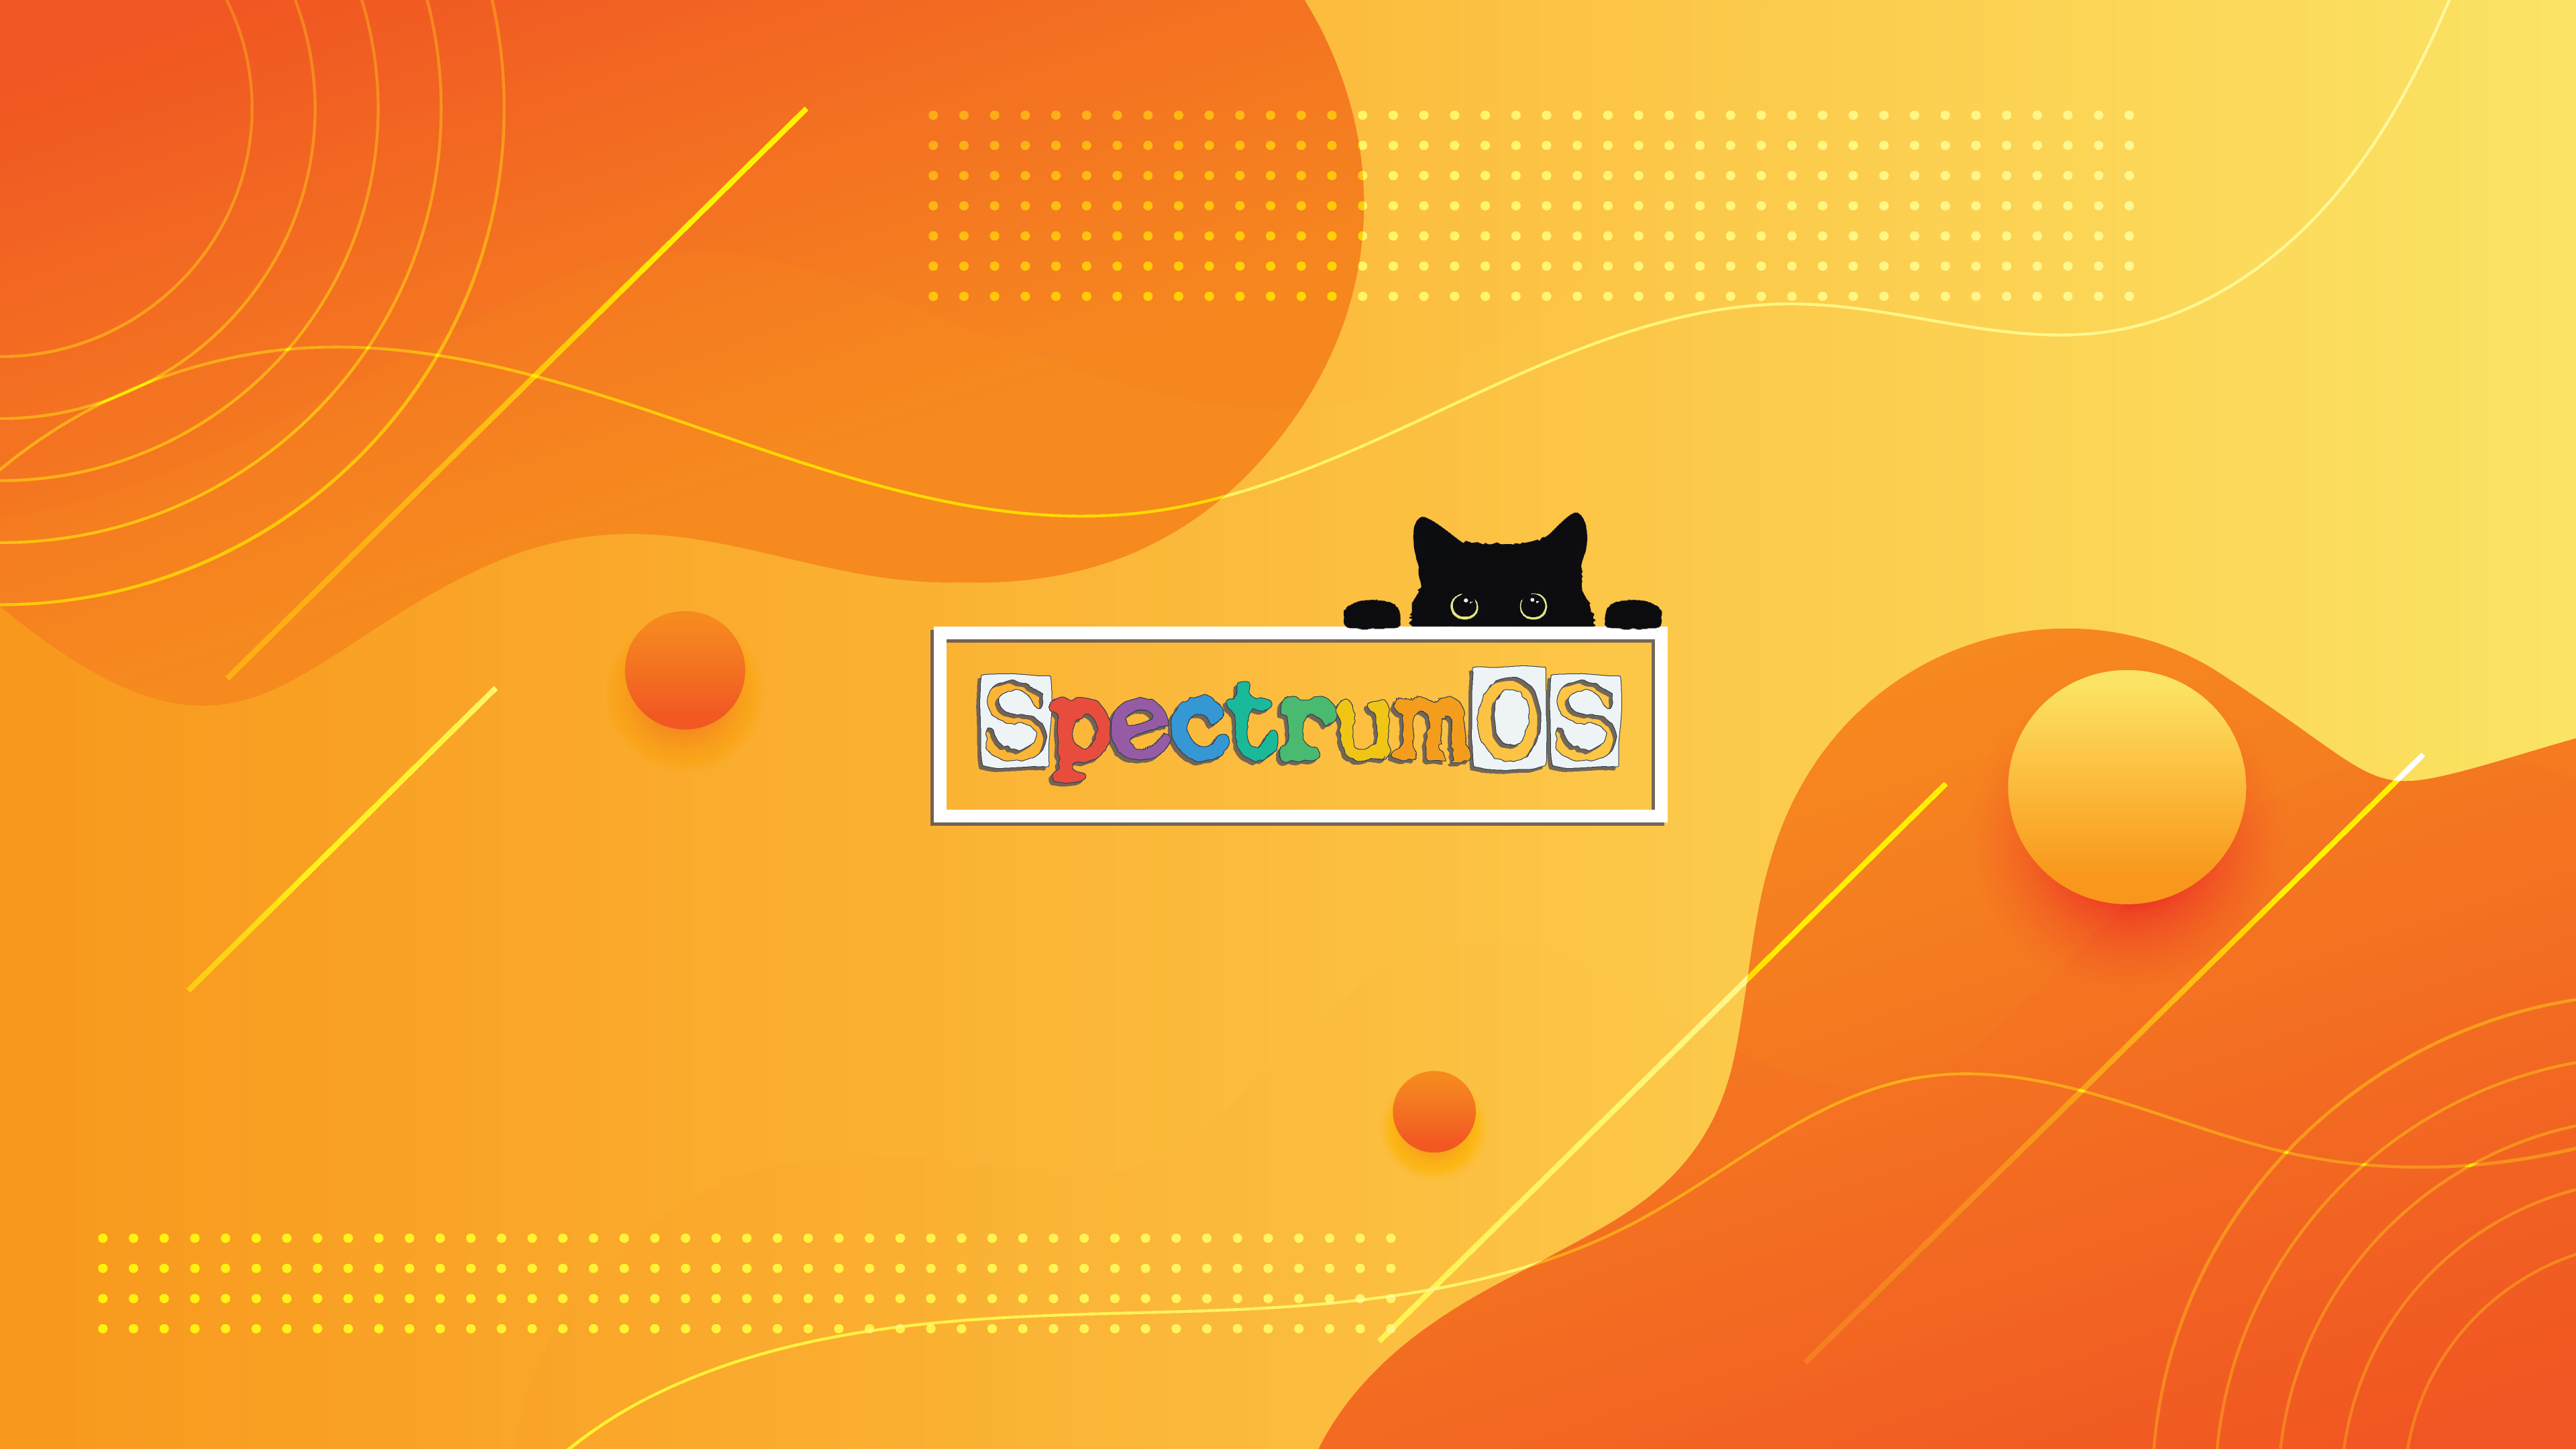 SpectrumOS Black Cat Colorful Digital Art 3840x2160